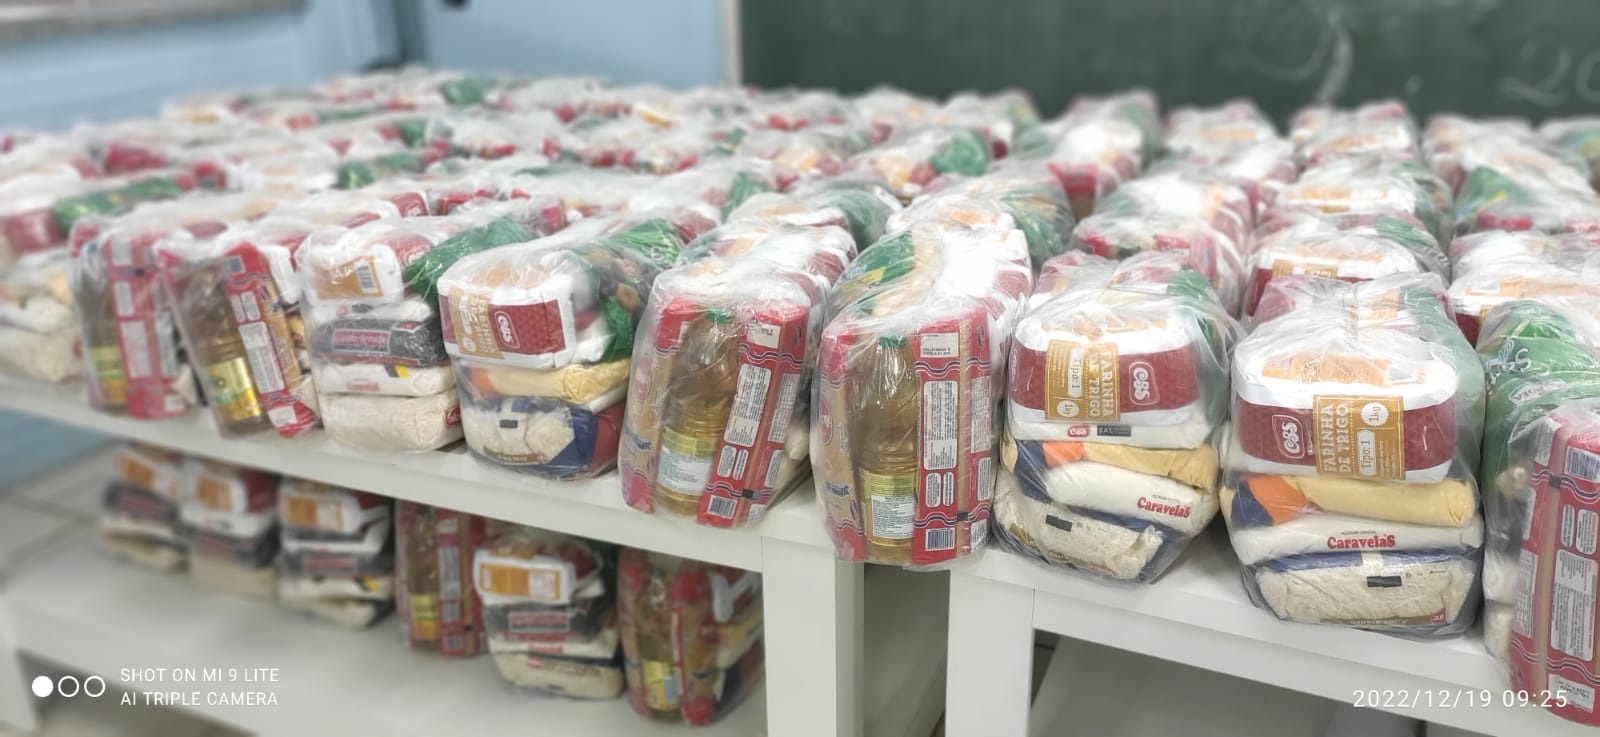 Mais de 150 toneladas de cestas básicas foram distribuídas pela Secretaria de Desenvolvimento Social em 2022